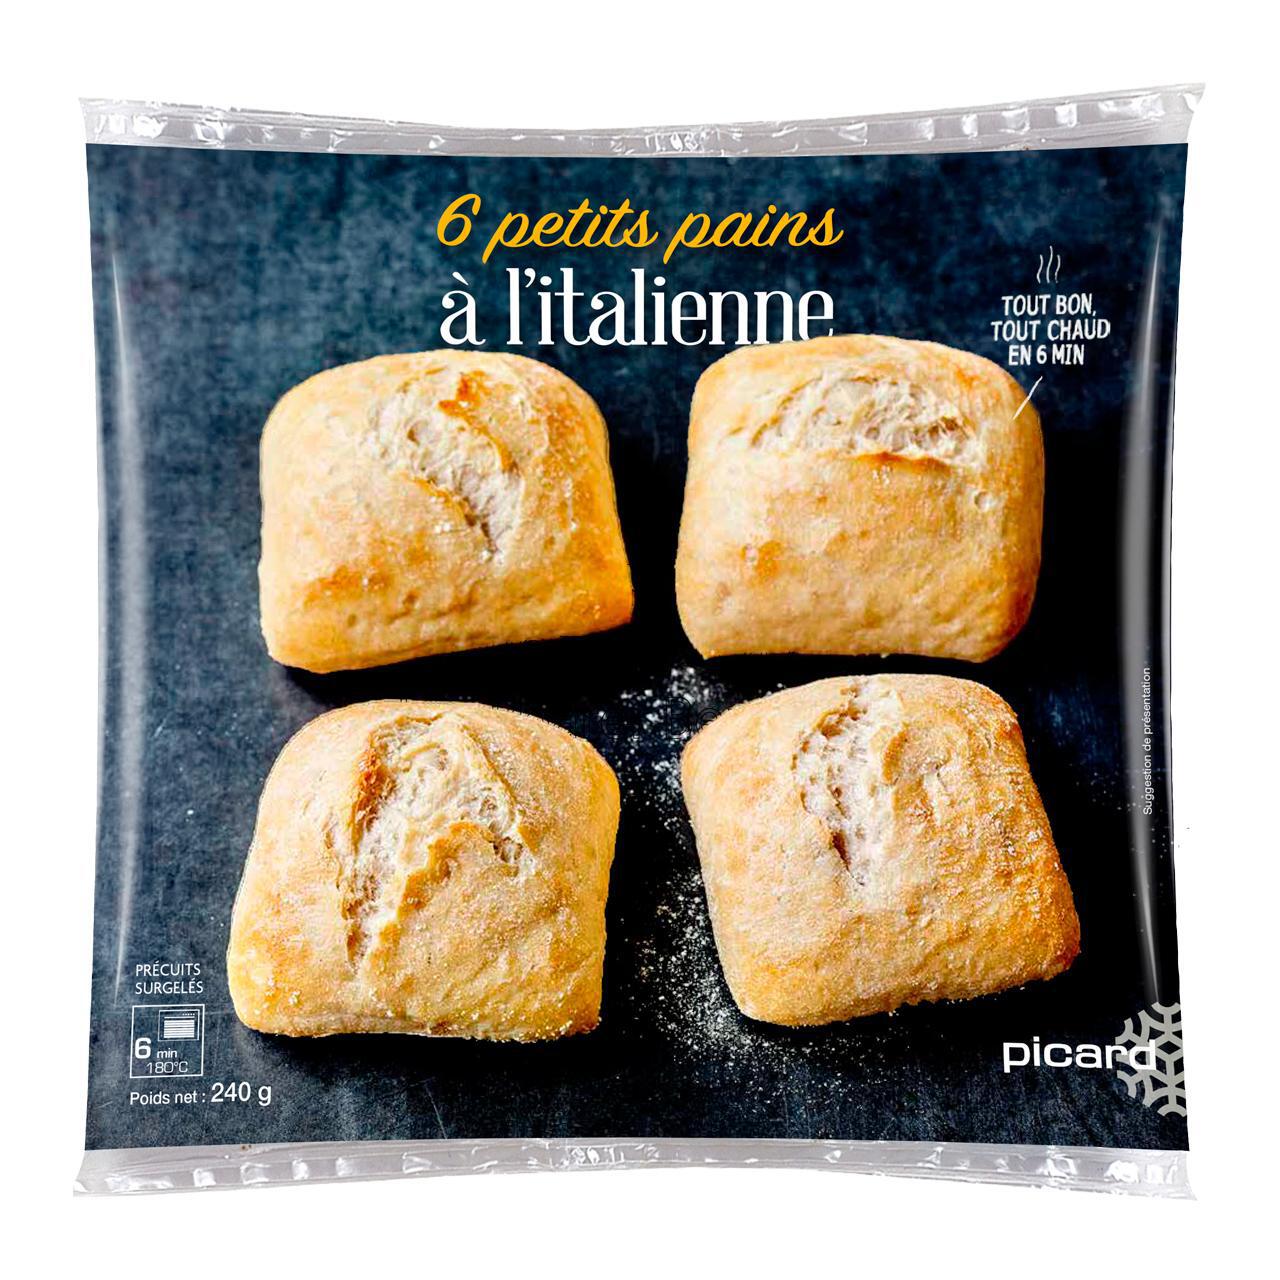 Picard Mini Italian Bread Rolls 6 per pack